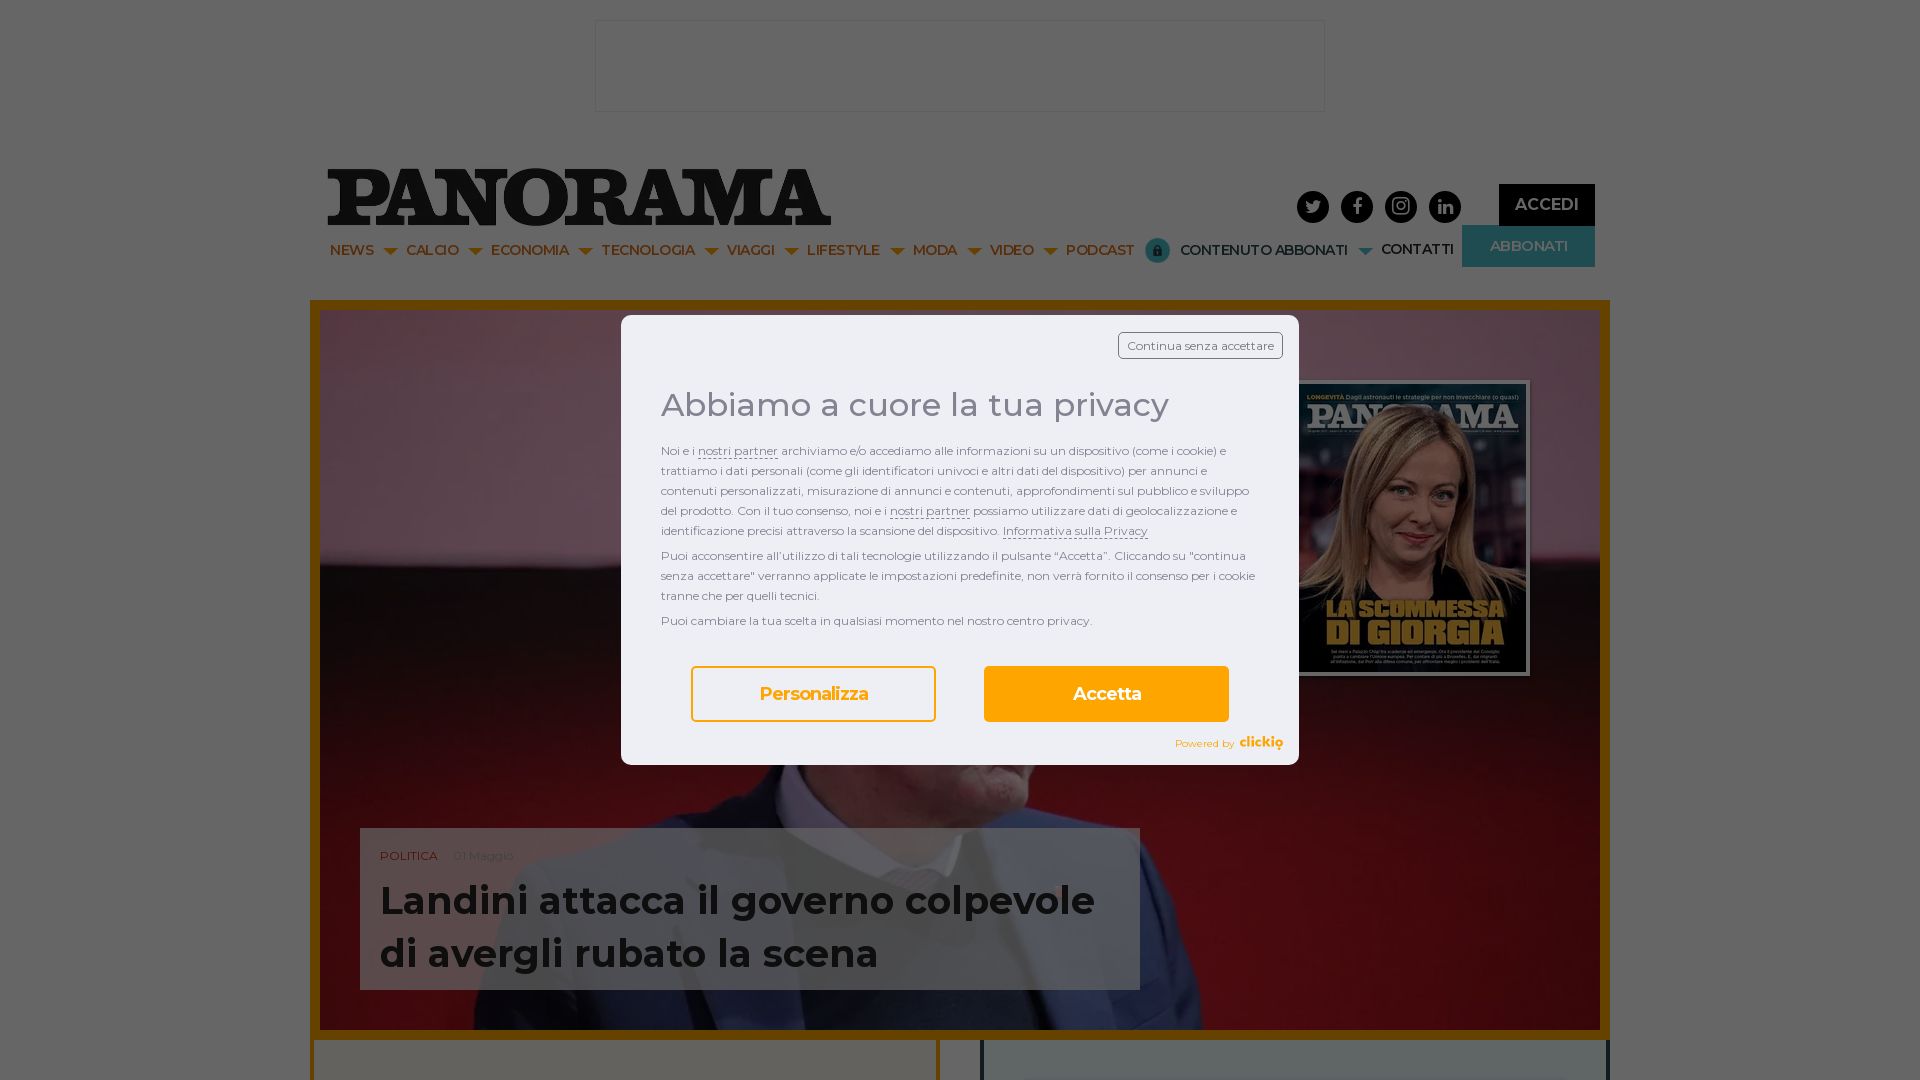 Status do site panorama.it está   ONLINE